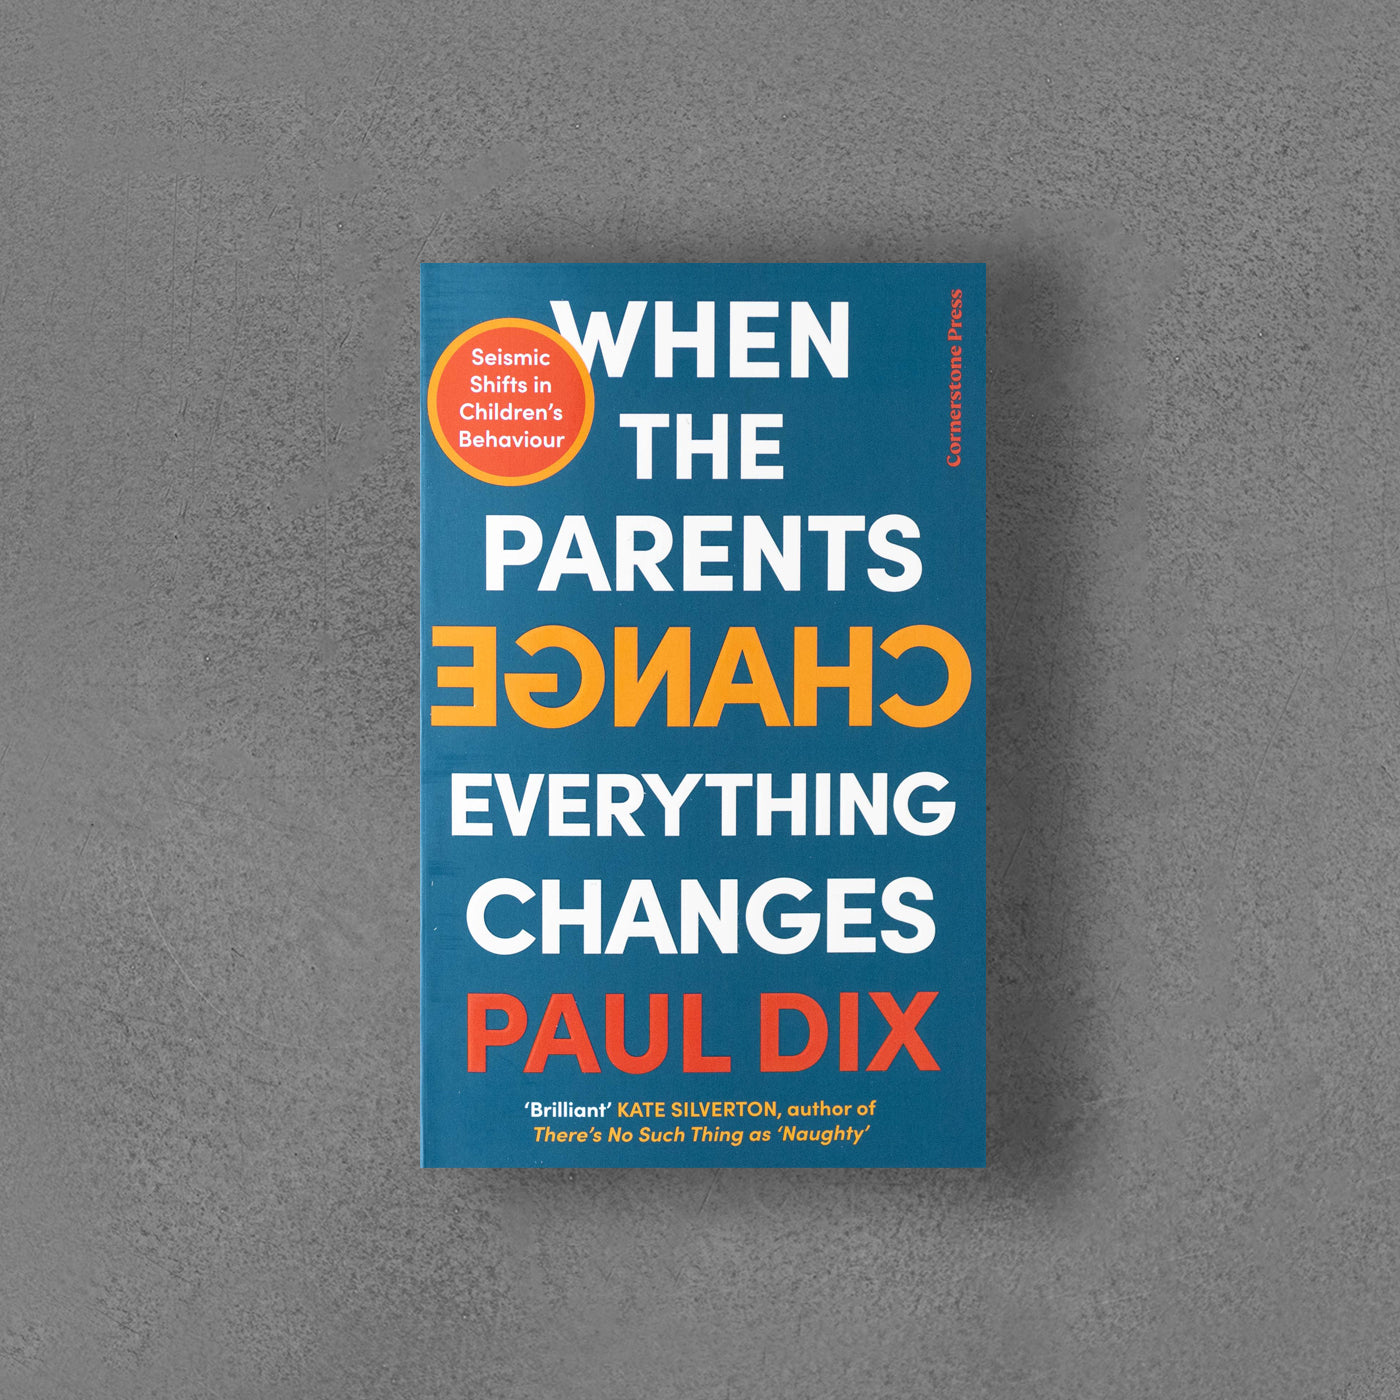 Kiedy rodzice się zmieniają, wszystko się zmienia – Paul Dix